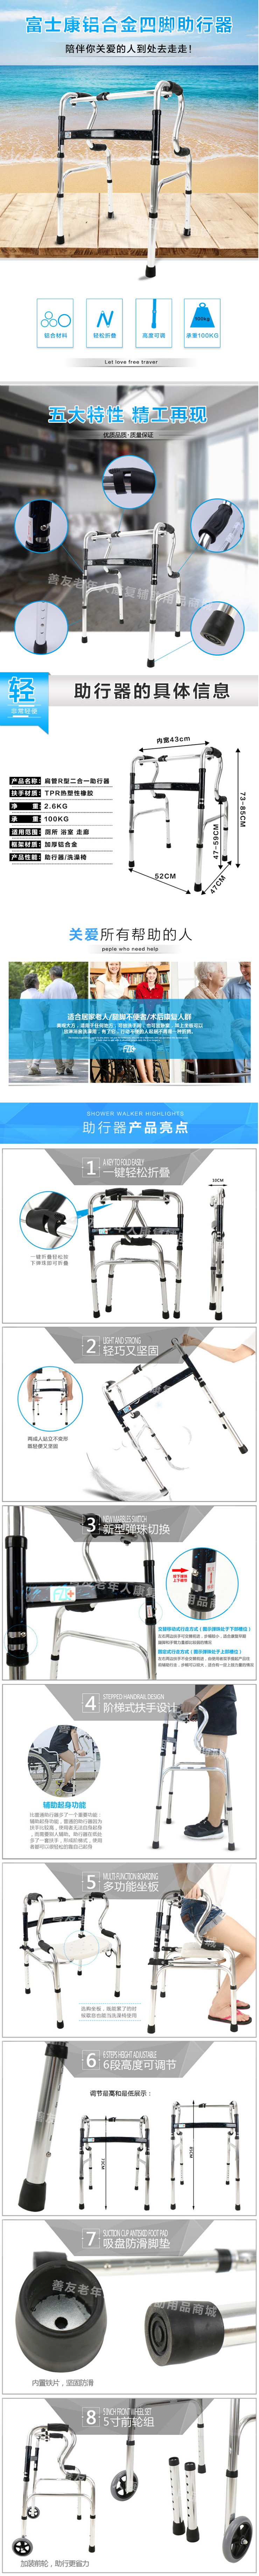 台湾富士康残疾人助行器老人康复助步器练习器可折叠铝合金助行器-淘宝网.jpg